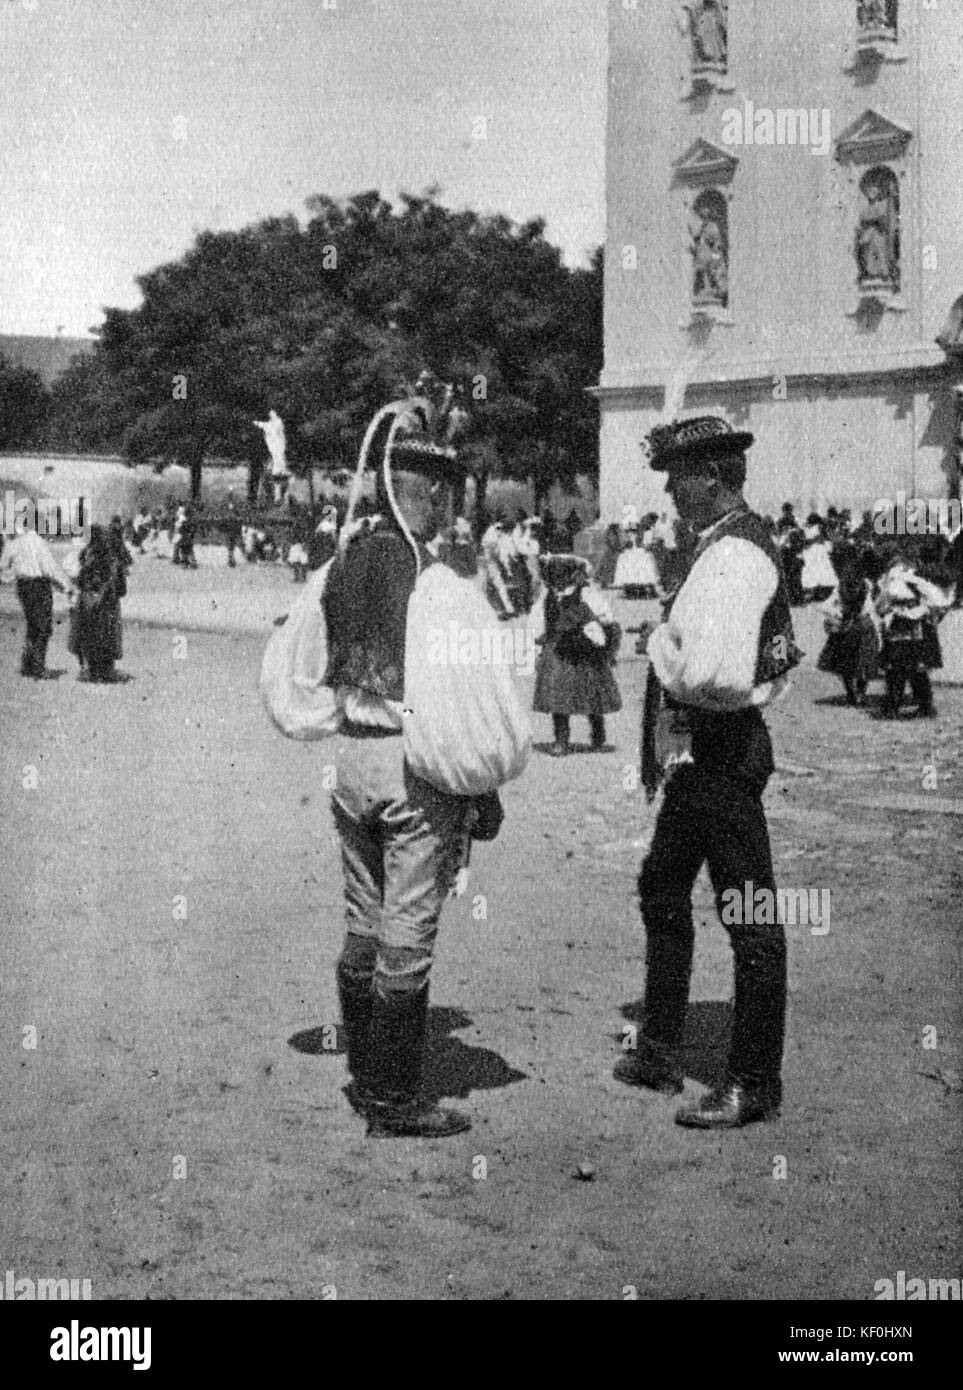 Los campesinos checa en trajes típicos. Leos Janacek 's inspiración para 'Janufa'. Información de fondo. Compositor checo, el 13 de julio de 1854 - 12 de agosto de 1928. Foto de stock